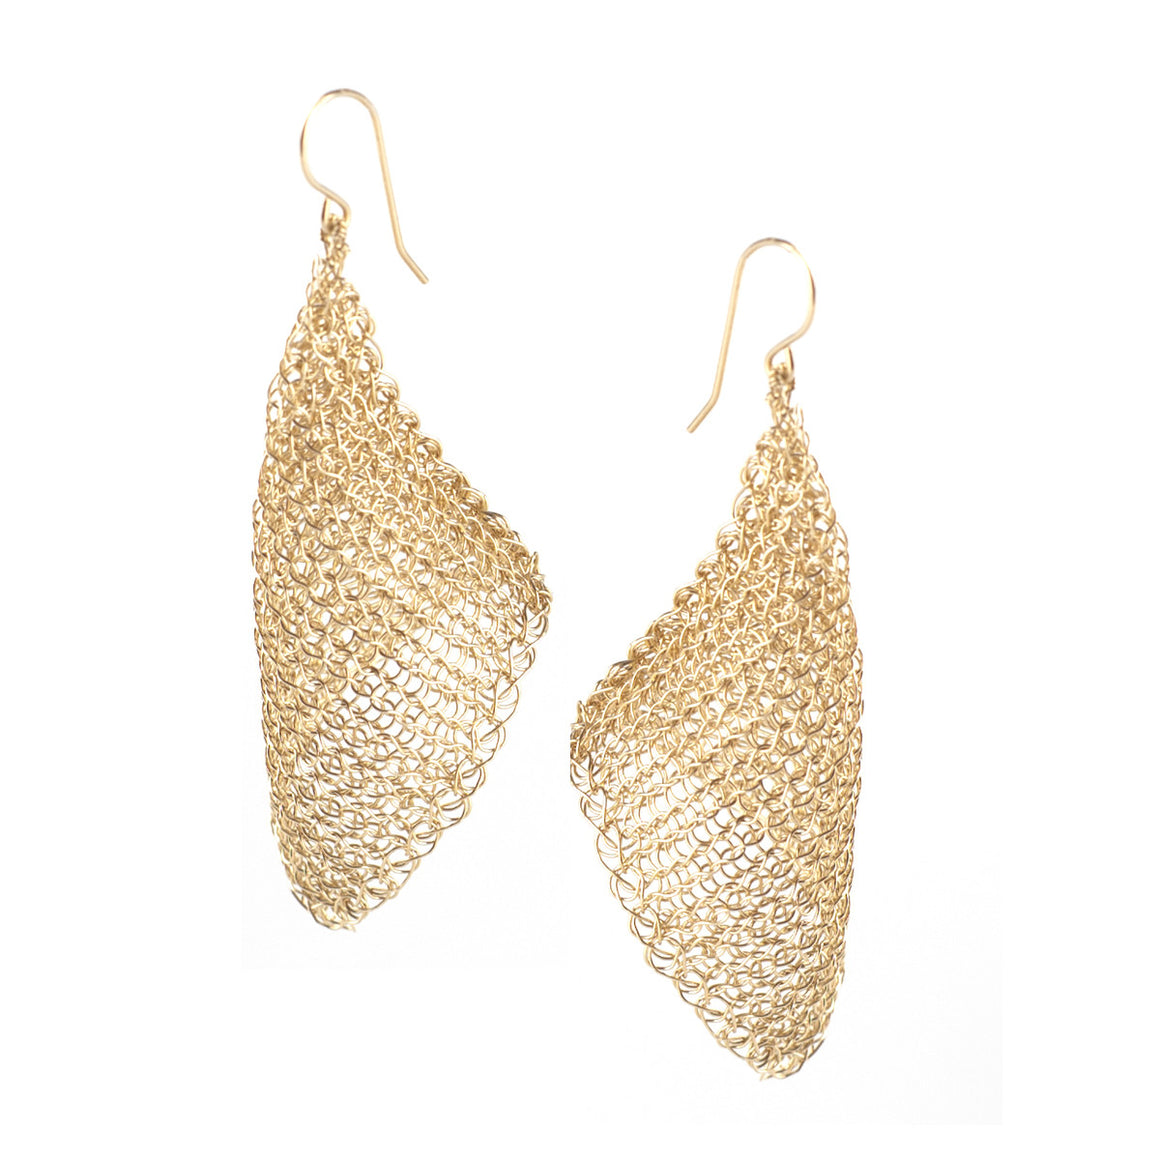 CALLA gold wire crochet earrings , long elegant crocheted earrings - Yooladesign